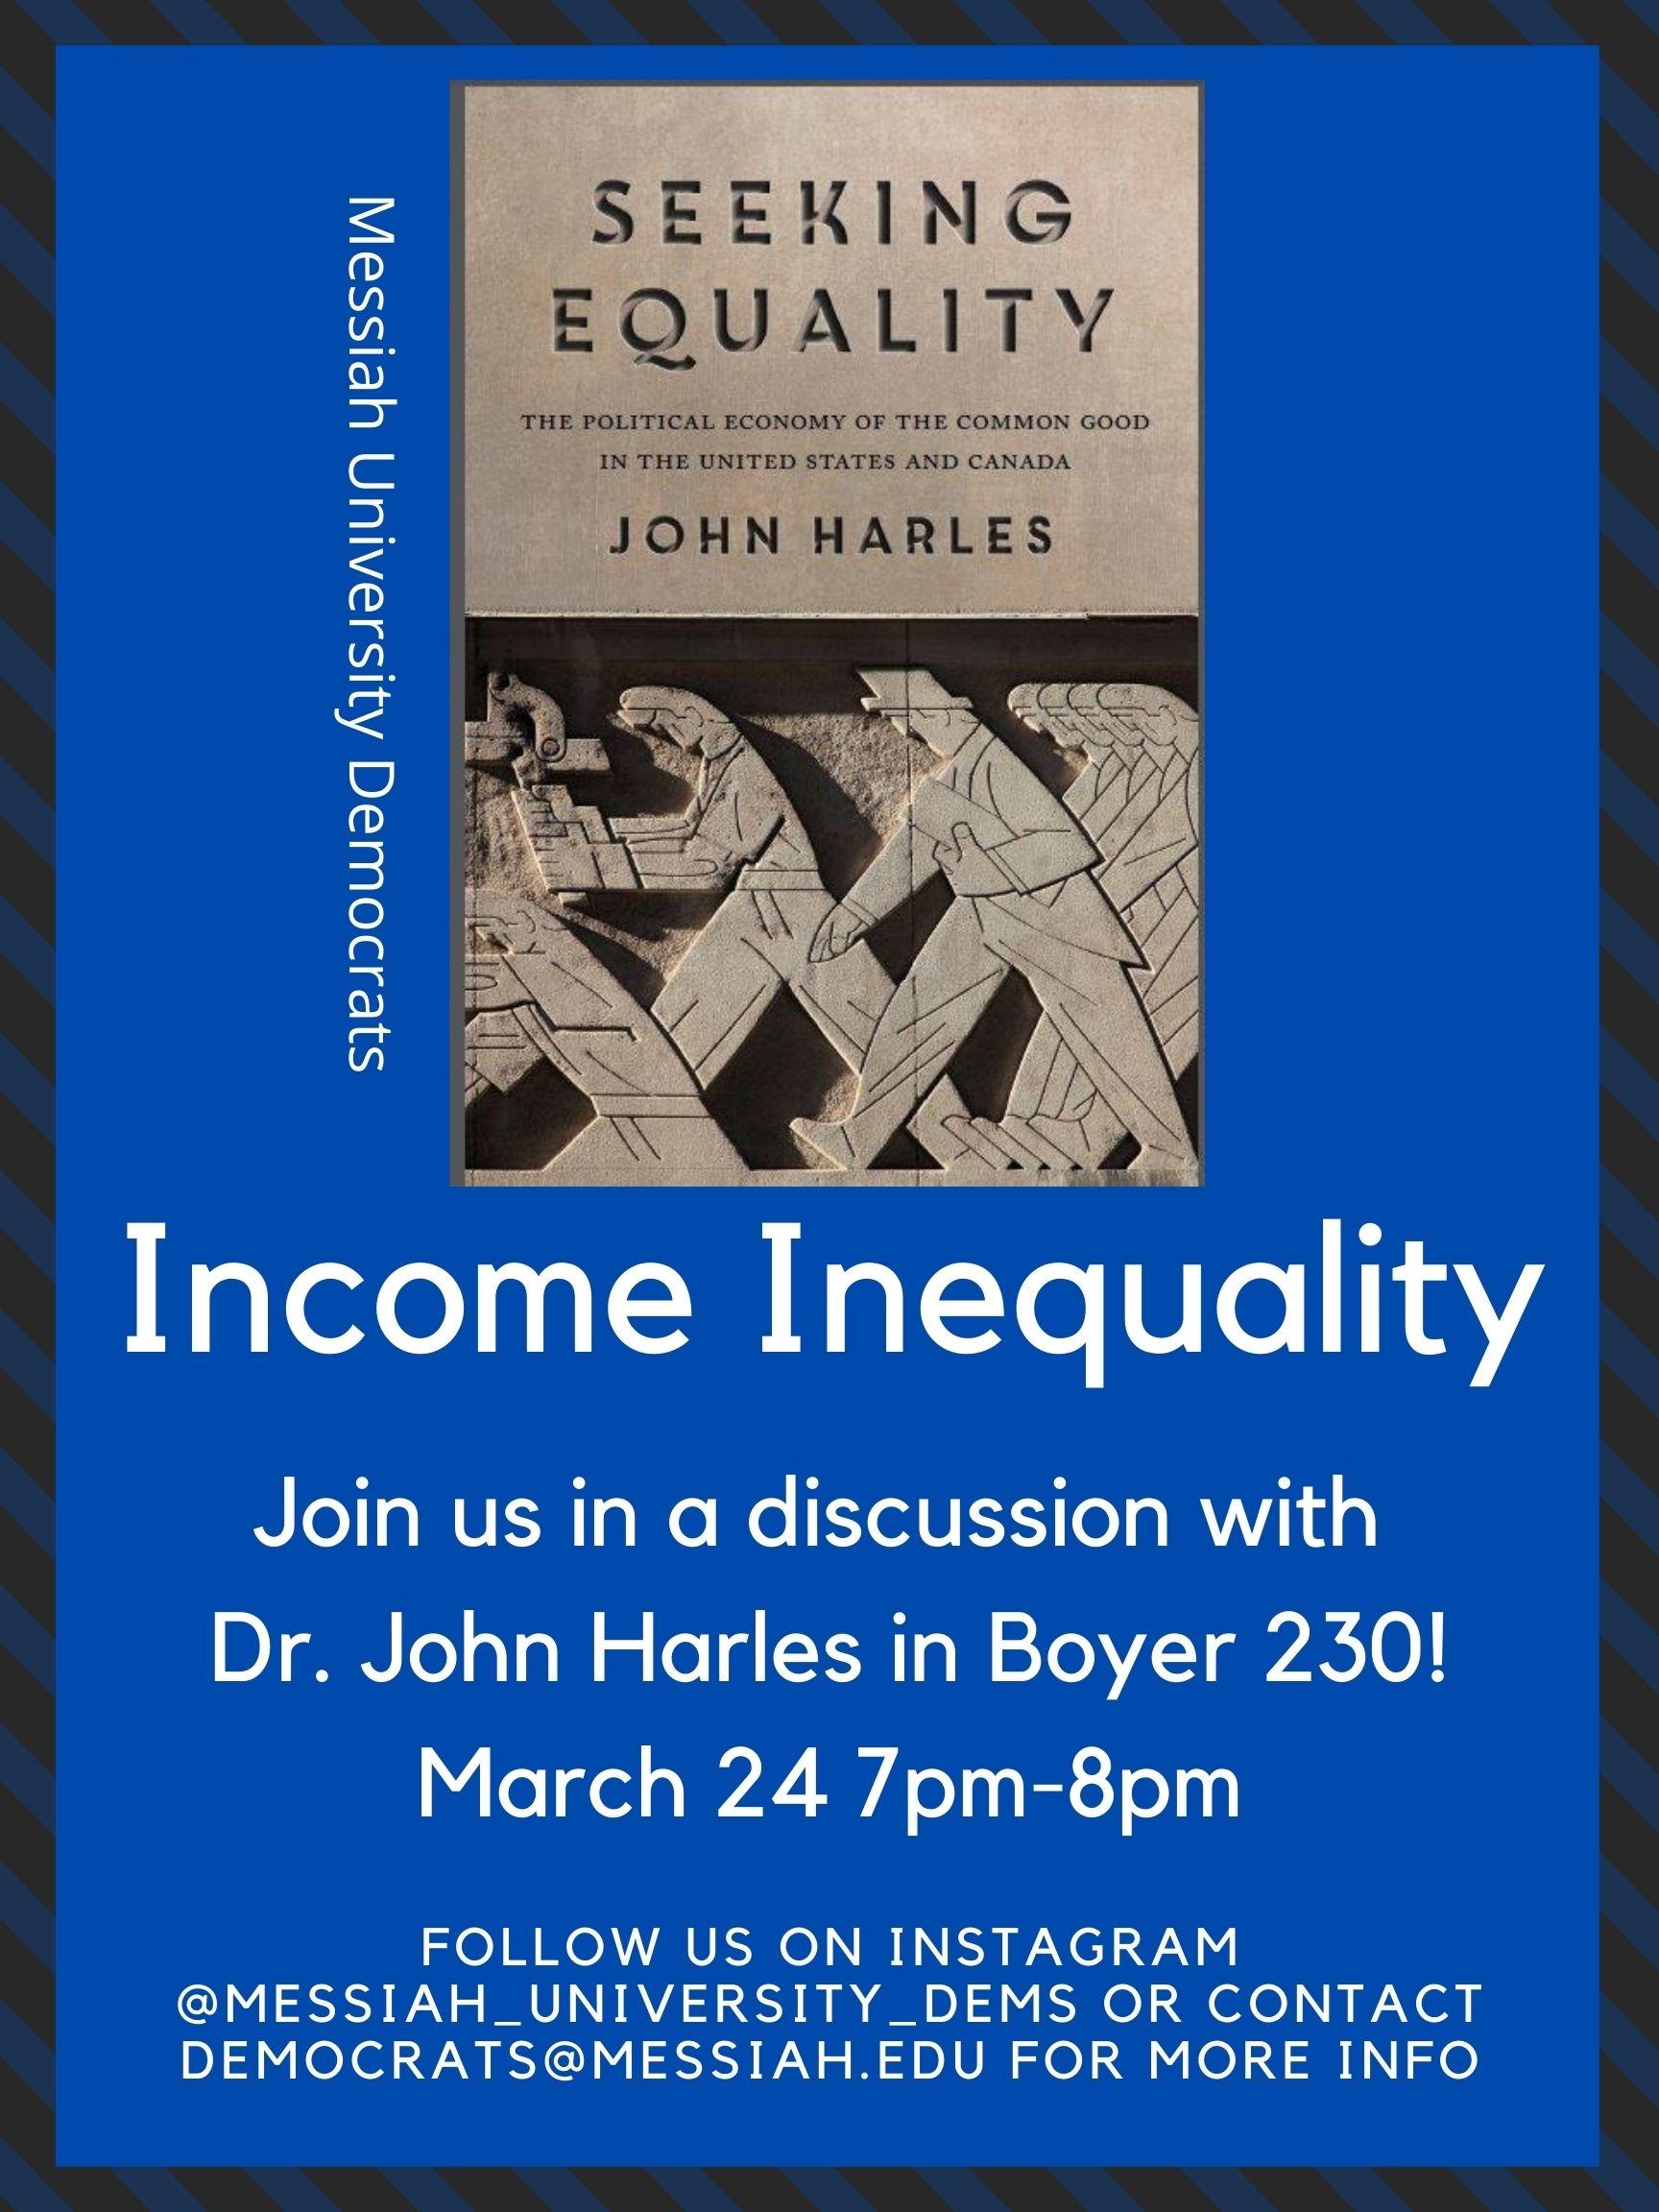 Economic inequality poster